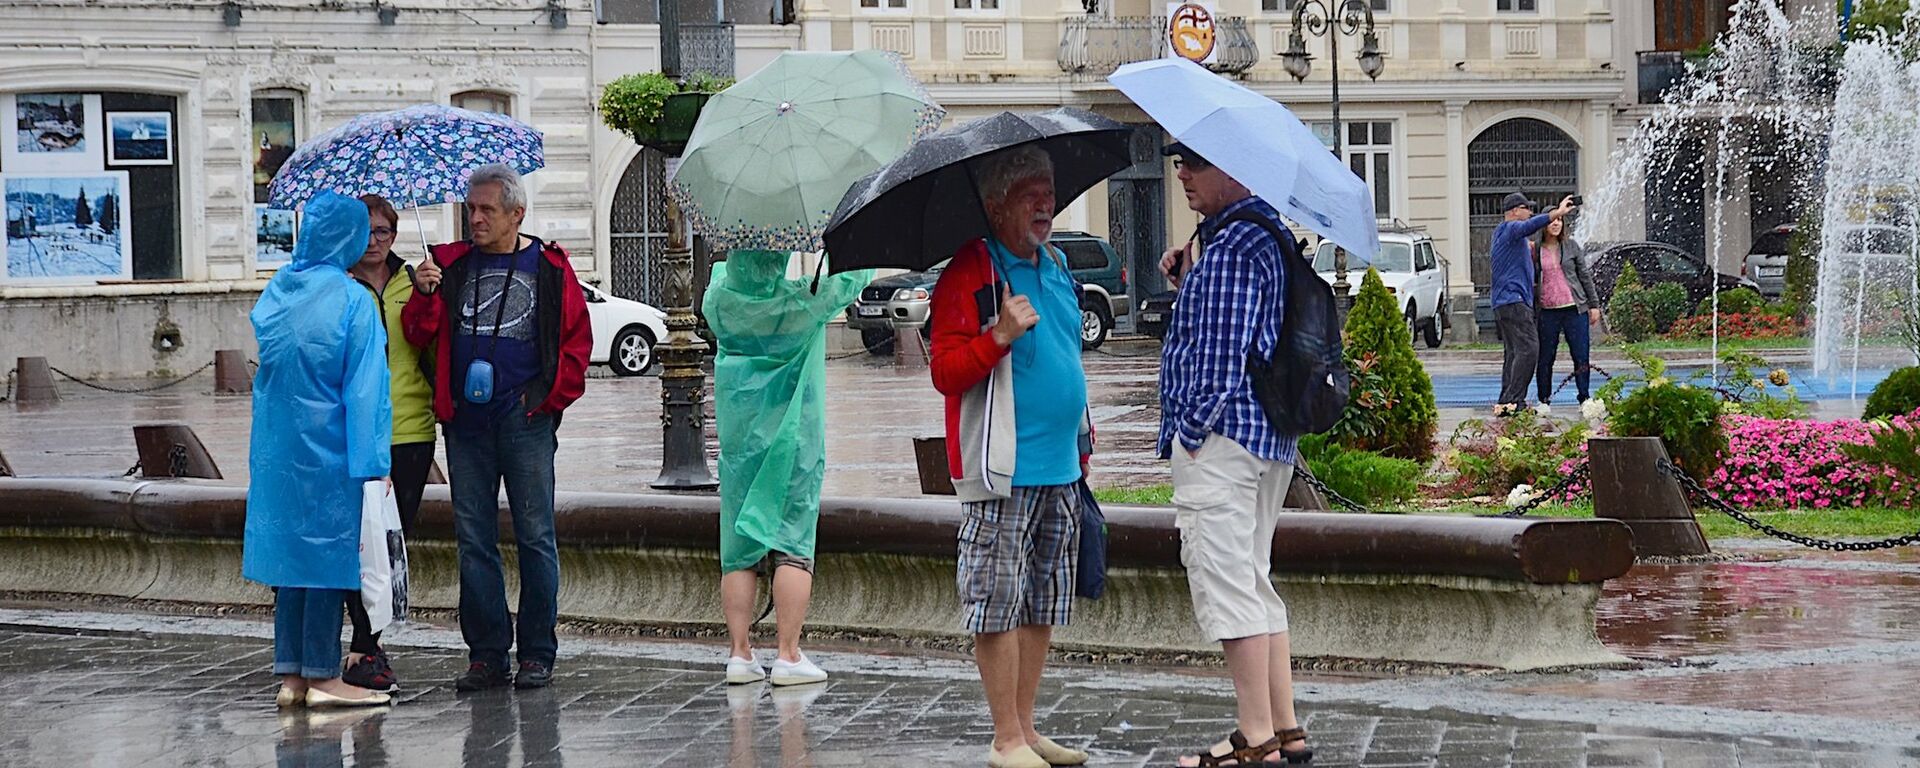 Прохожие с зонтиками идут по одной из улиц Батуми после дождя - Sputnik Грузия, 1920, 16.05.2021